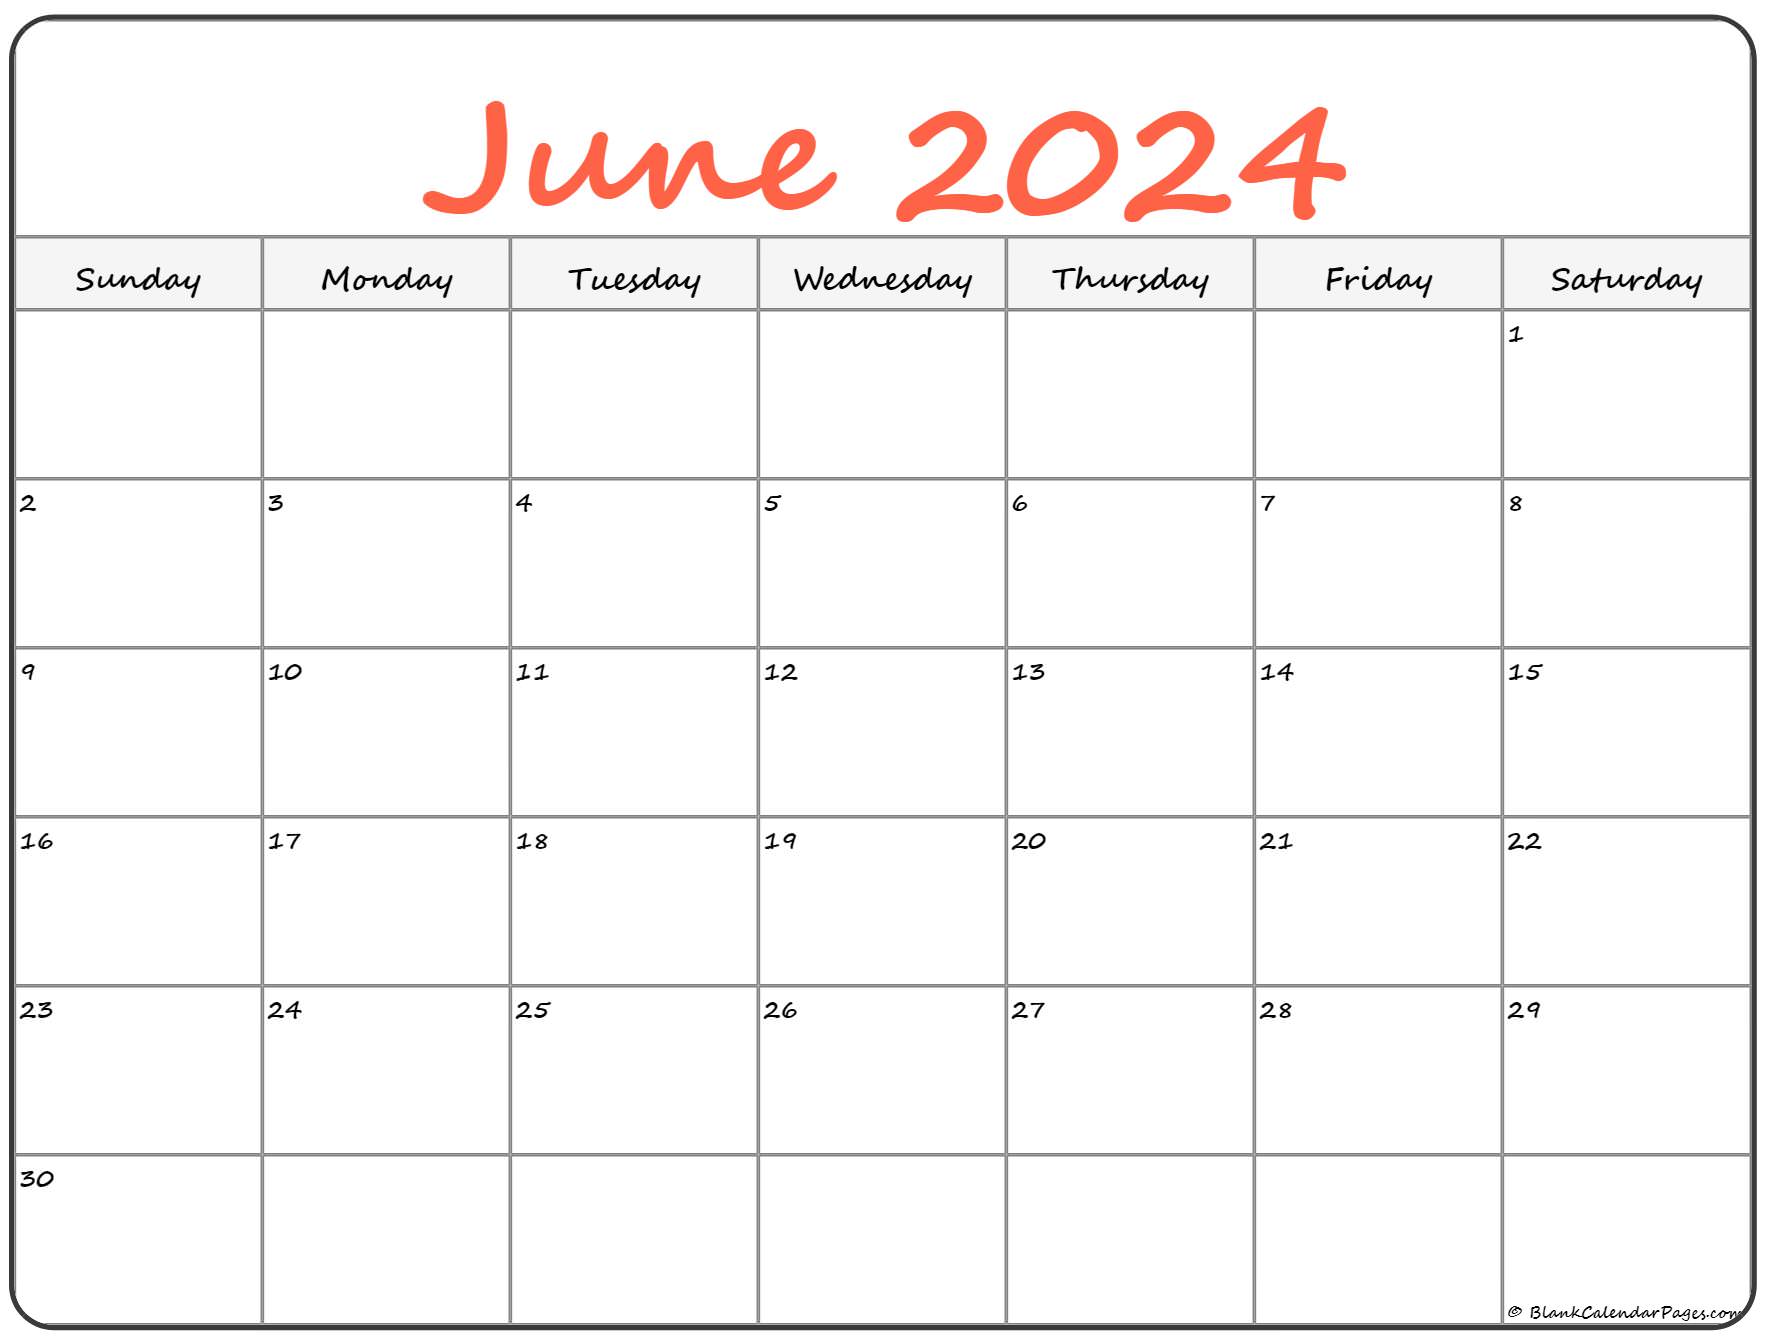 June 2023 Calendar Free Printable Calendar June 2023 Calendar Free Printable Calendar June 